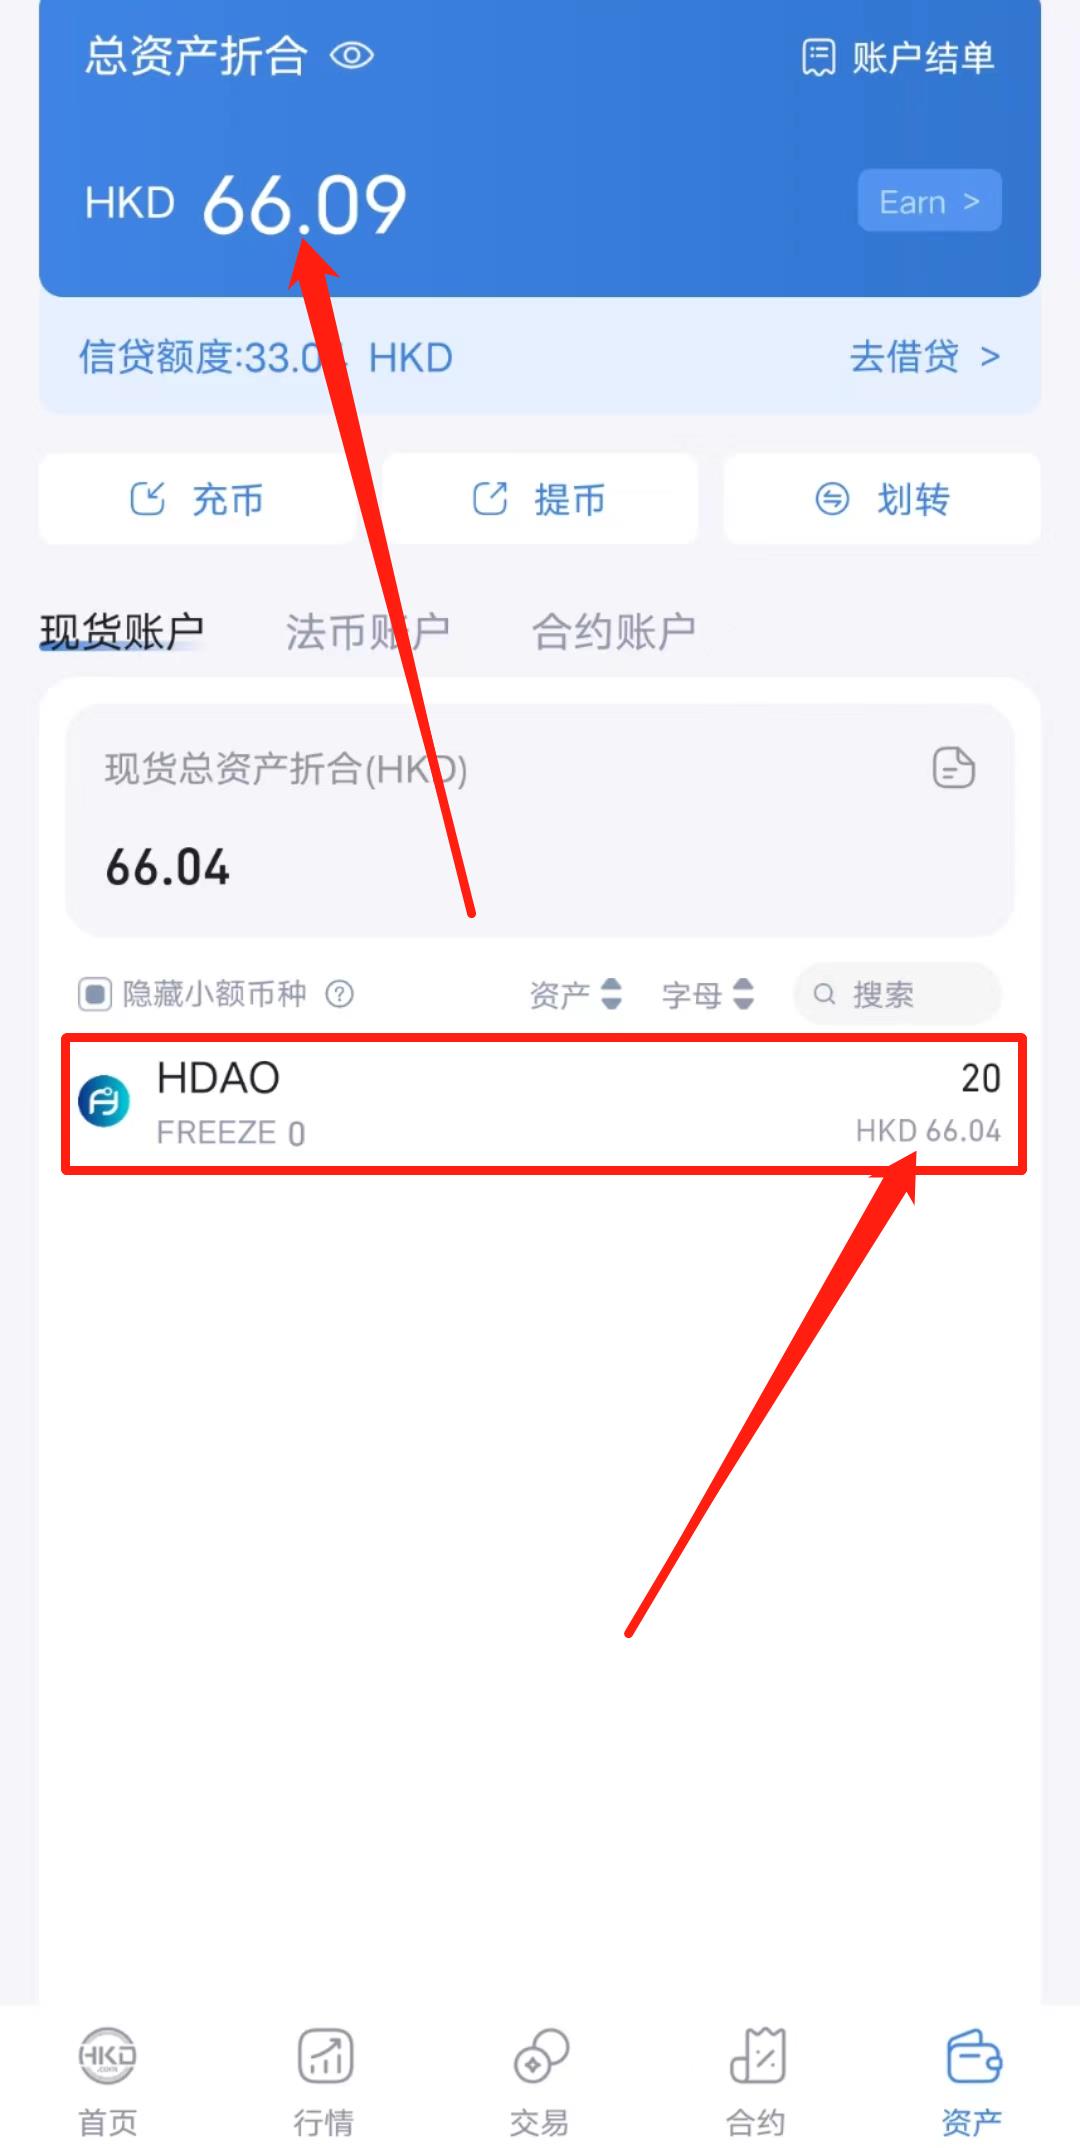 香港hkd交易S 注册完成高级认证送20HDAO,价值60圆 大毛 速度撸-第8张图片-首码圈